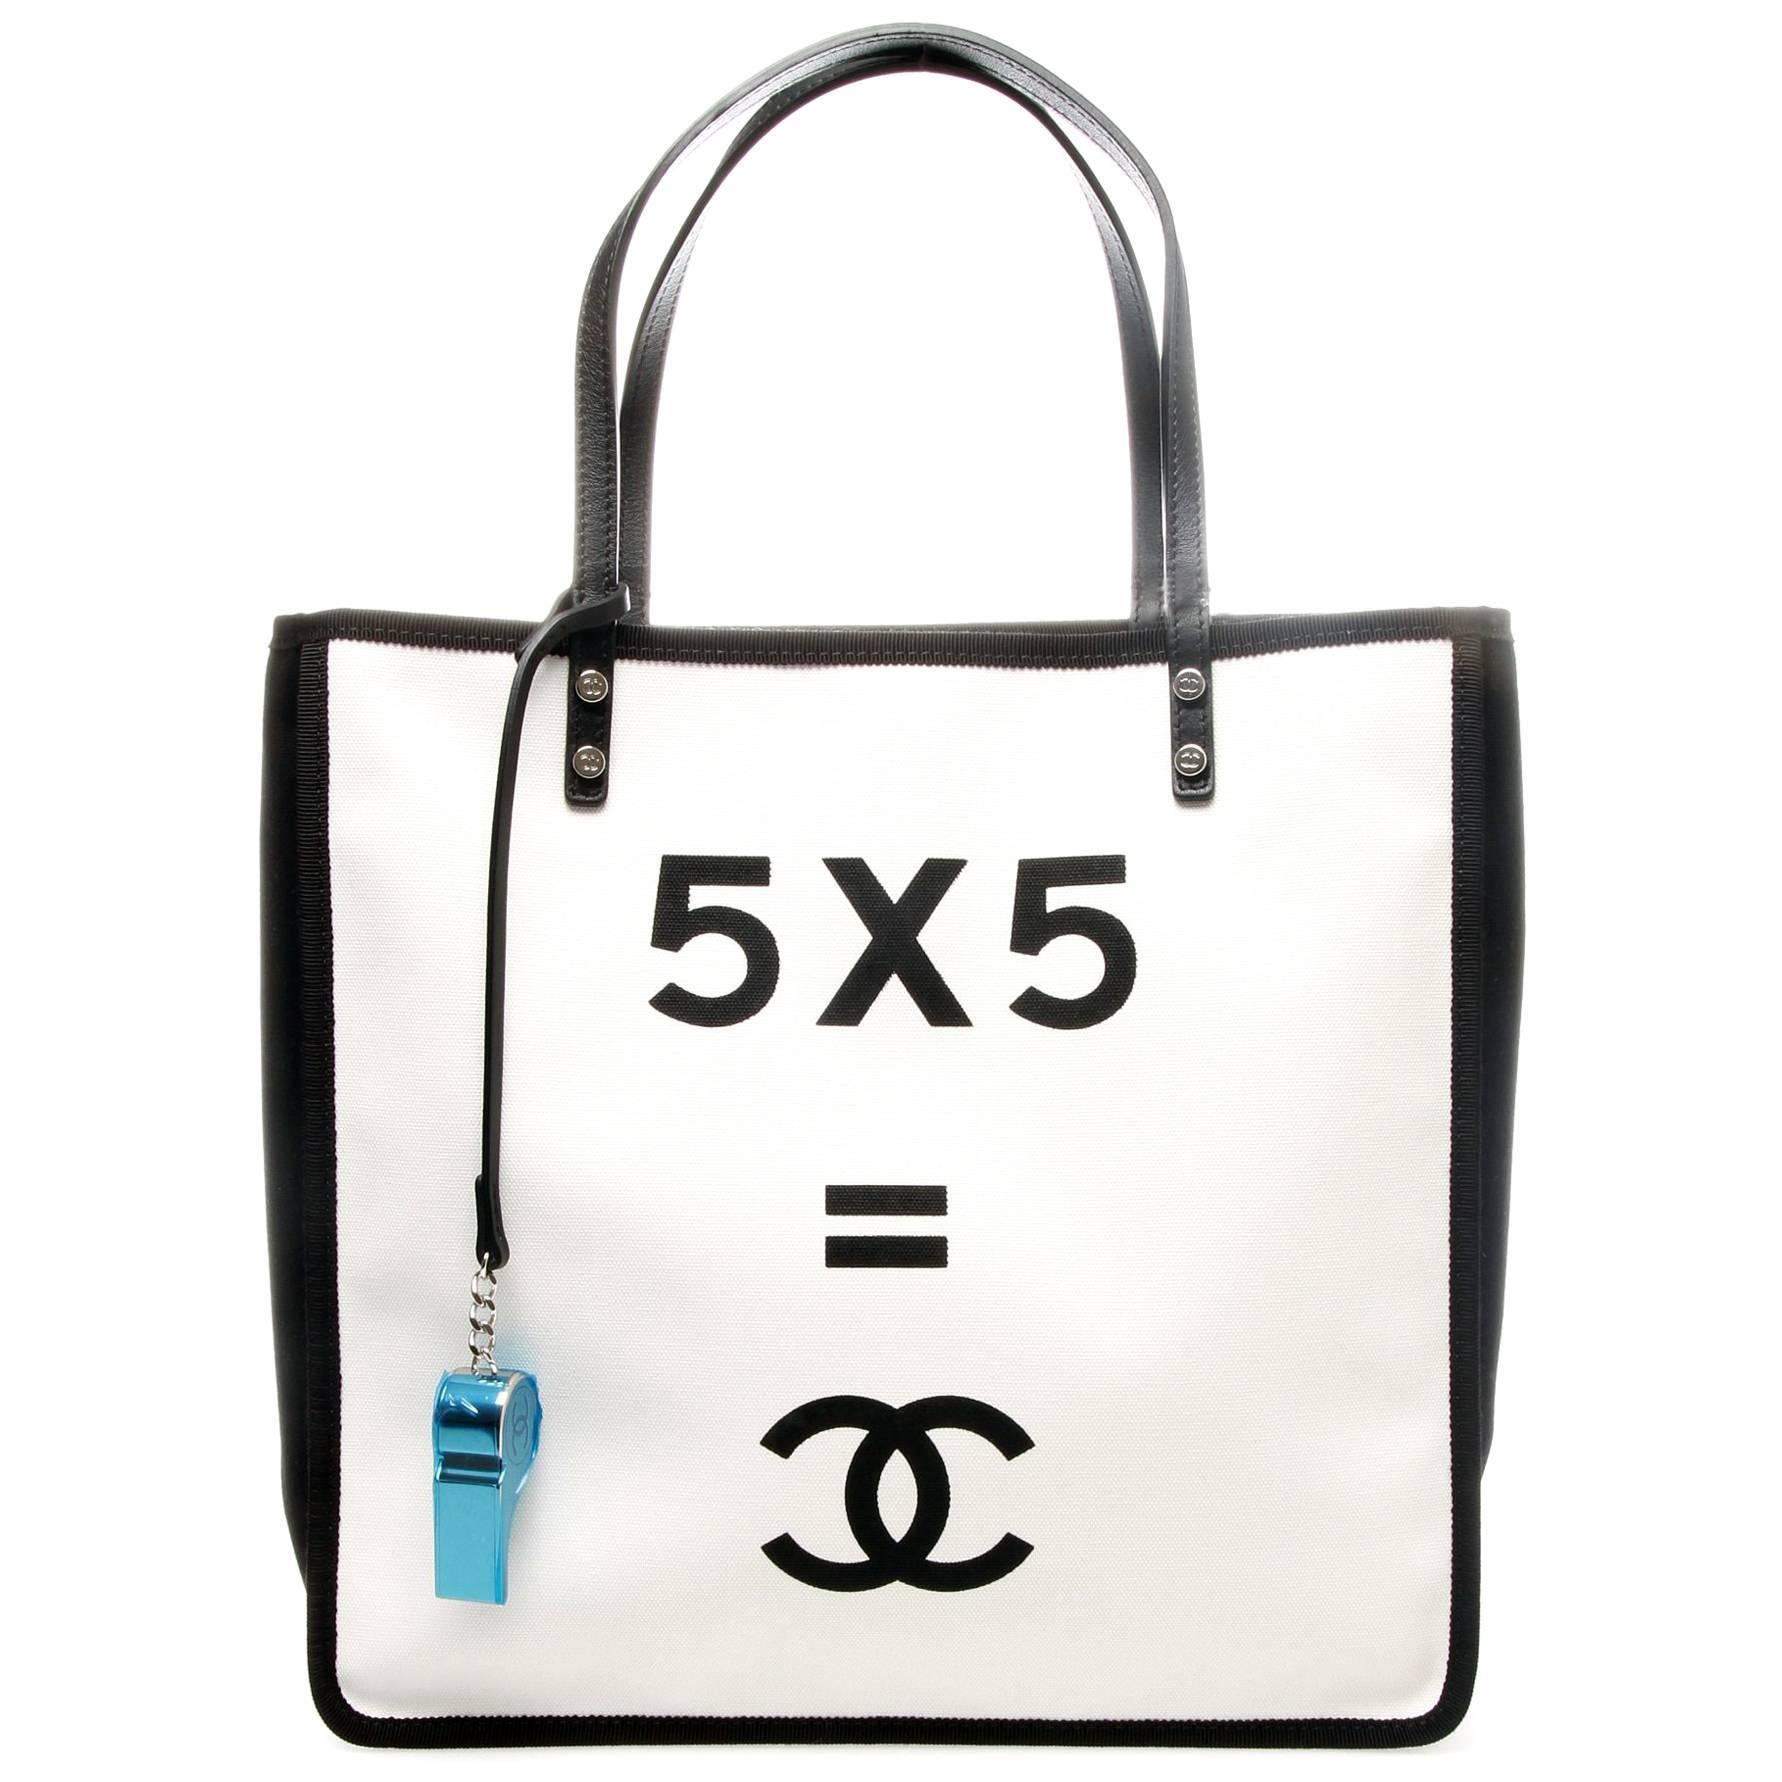 Sell Chanel Vintage No.5 Canvas Tote Bag - Cream/Multicolor